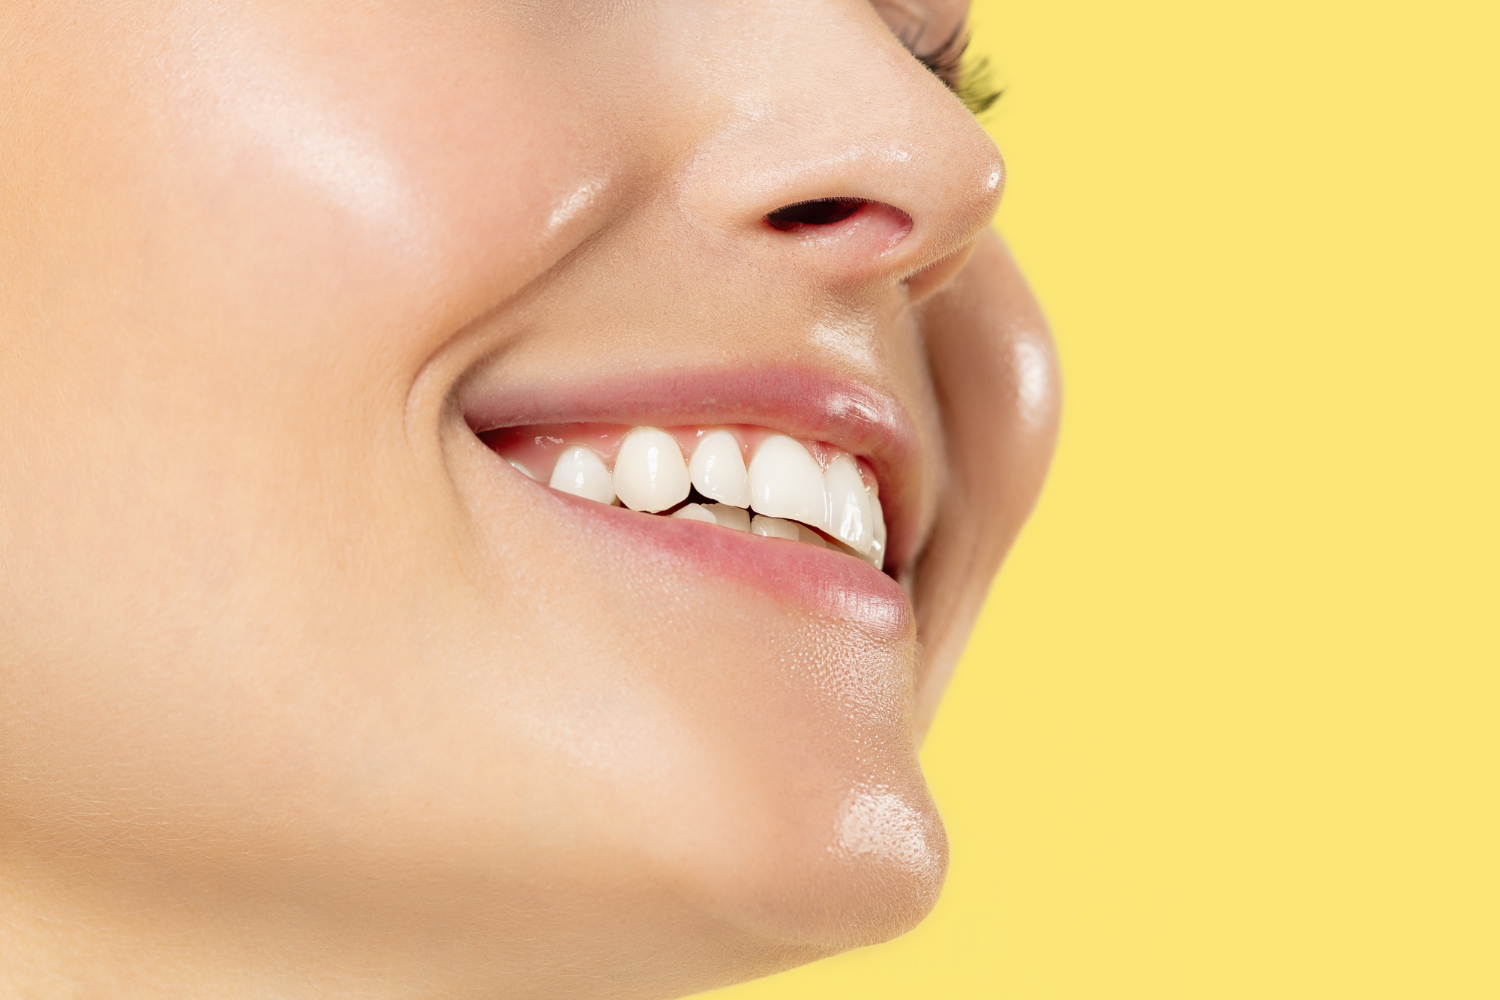 Răng sứ Emax giúp đem lại nụ cười rạng rỡ cho khách hàng